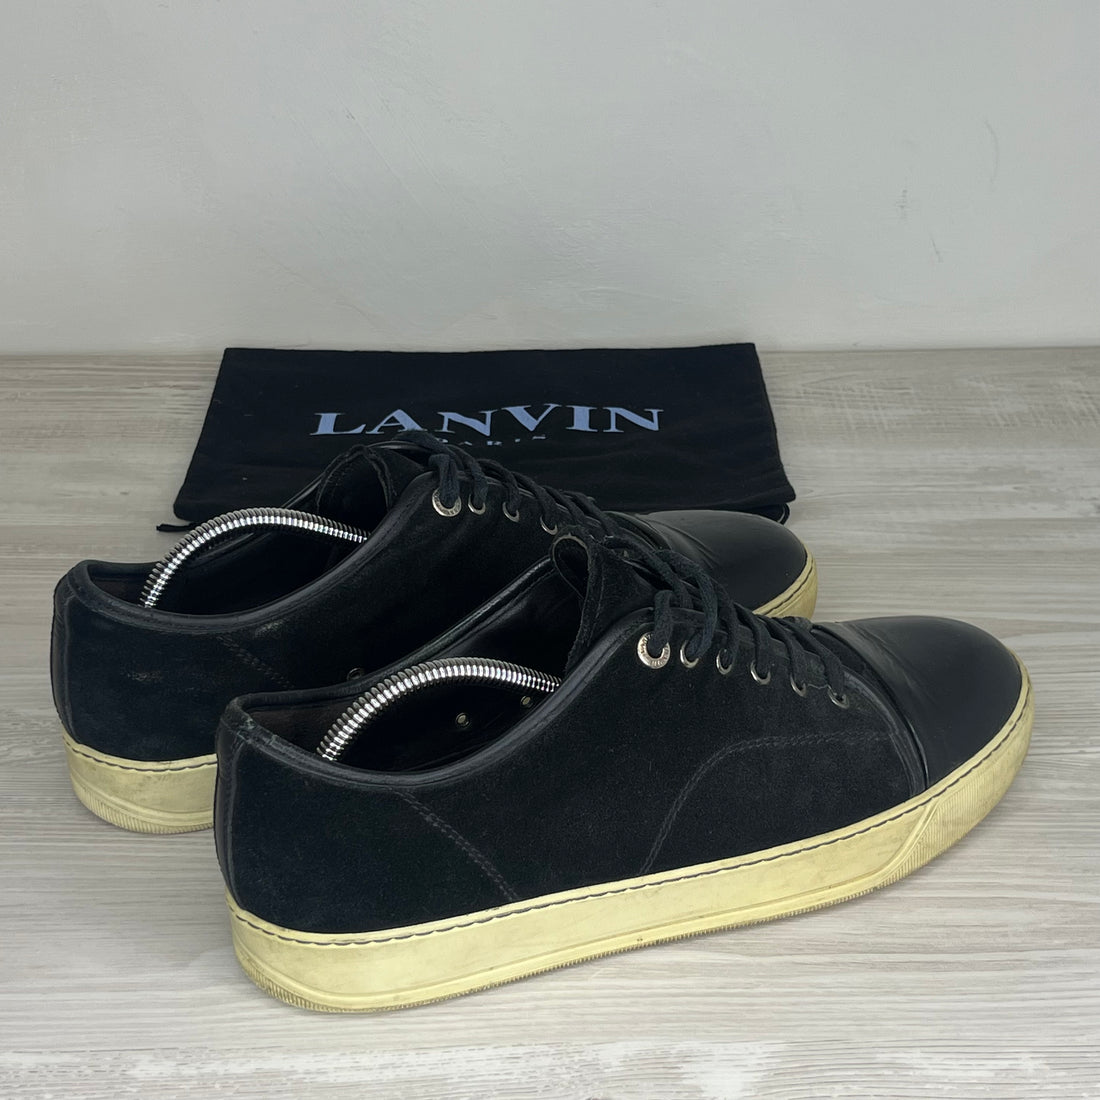 Lanvin Sneakers, Herre &